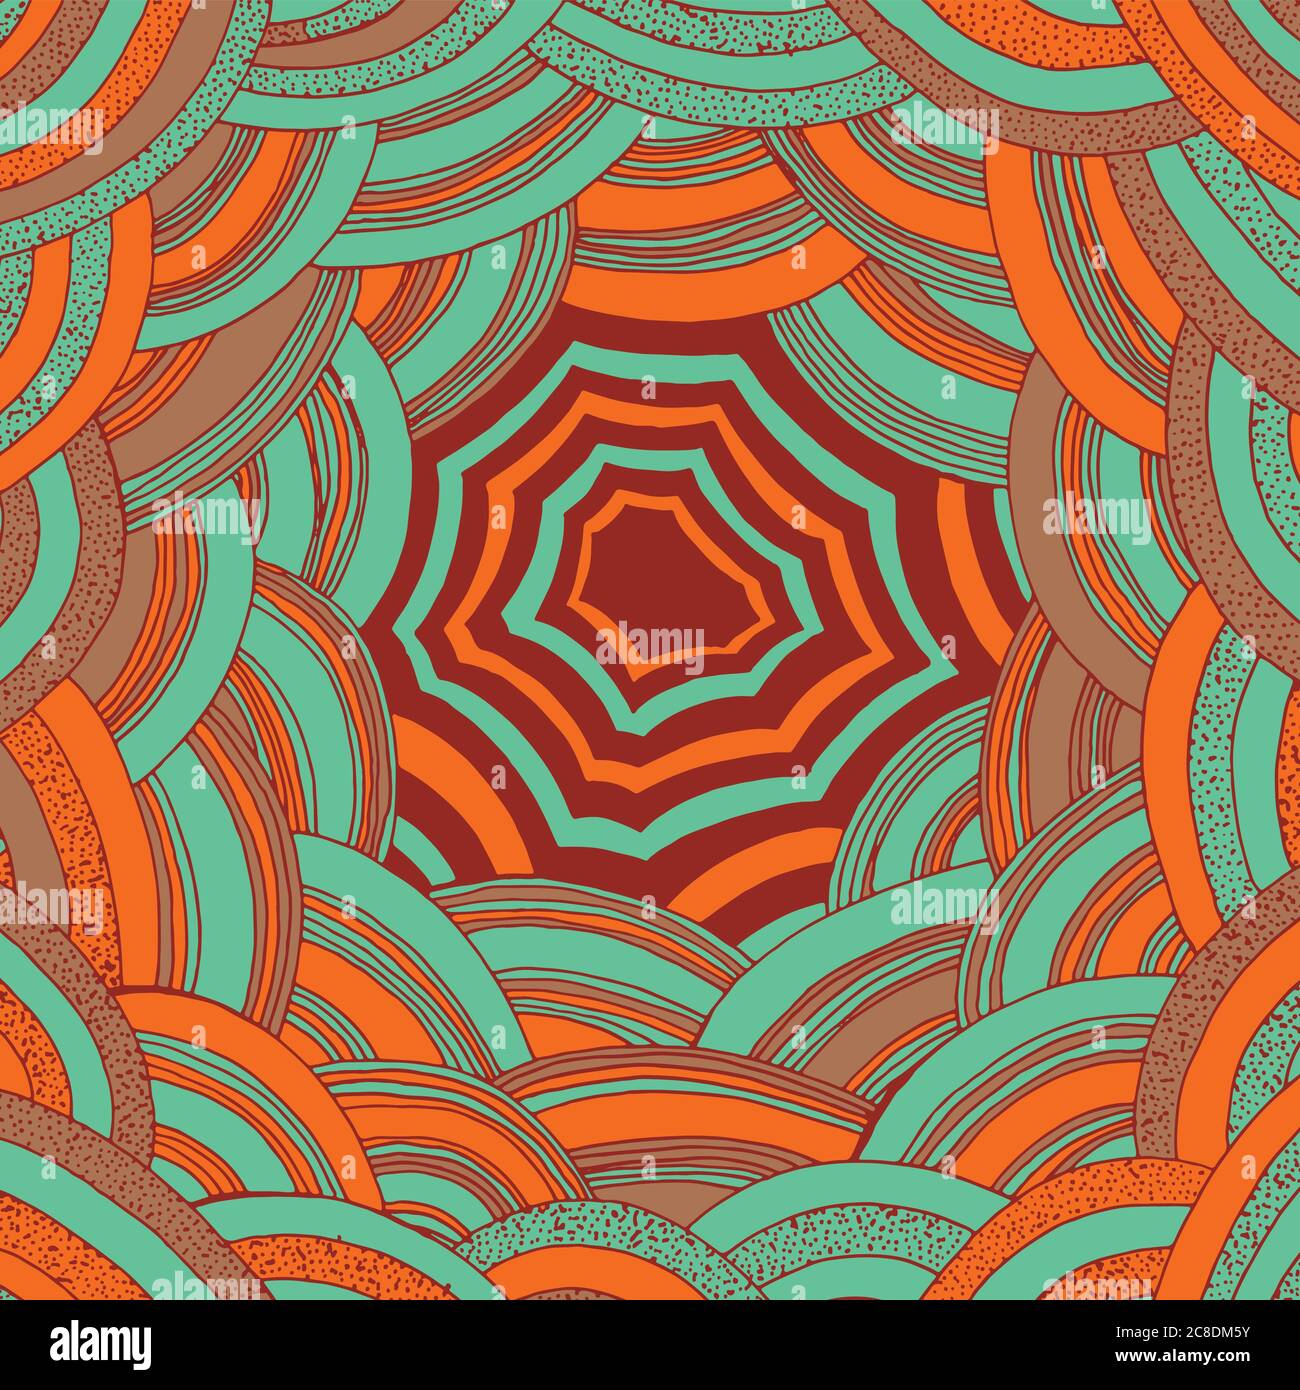 Farbenfrohe orange-blaue Doodle-Streifen-Muster. Volkskunst der Aborigines abstrakt einfaches Ornament. Psychedelische Textur. Vektorgrafik. Stock Vektor